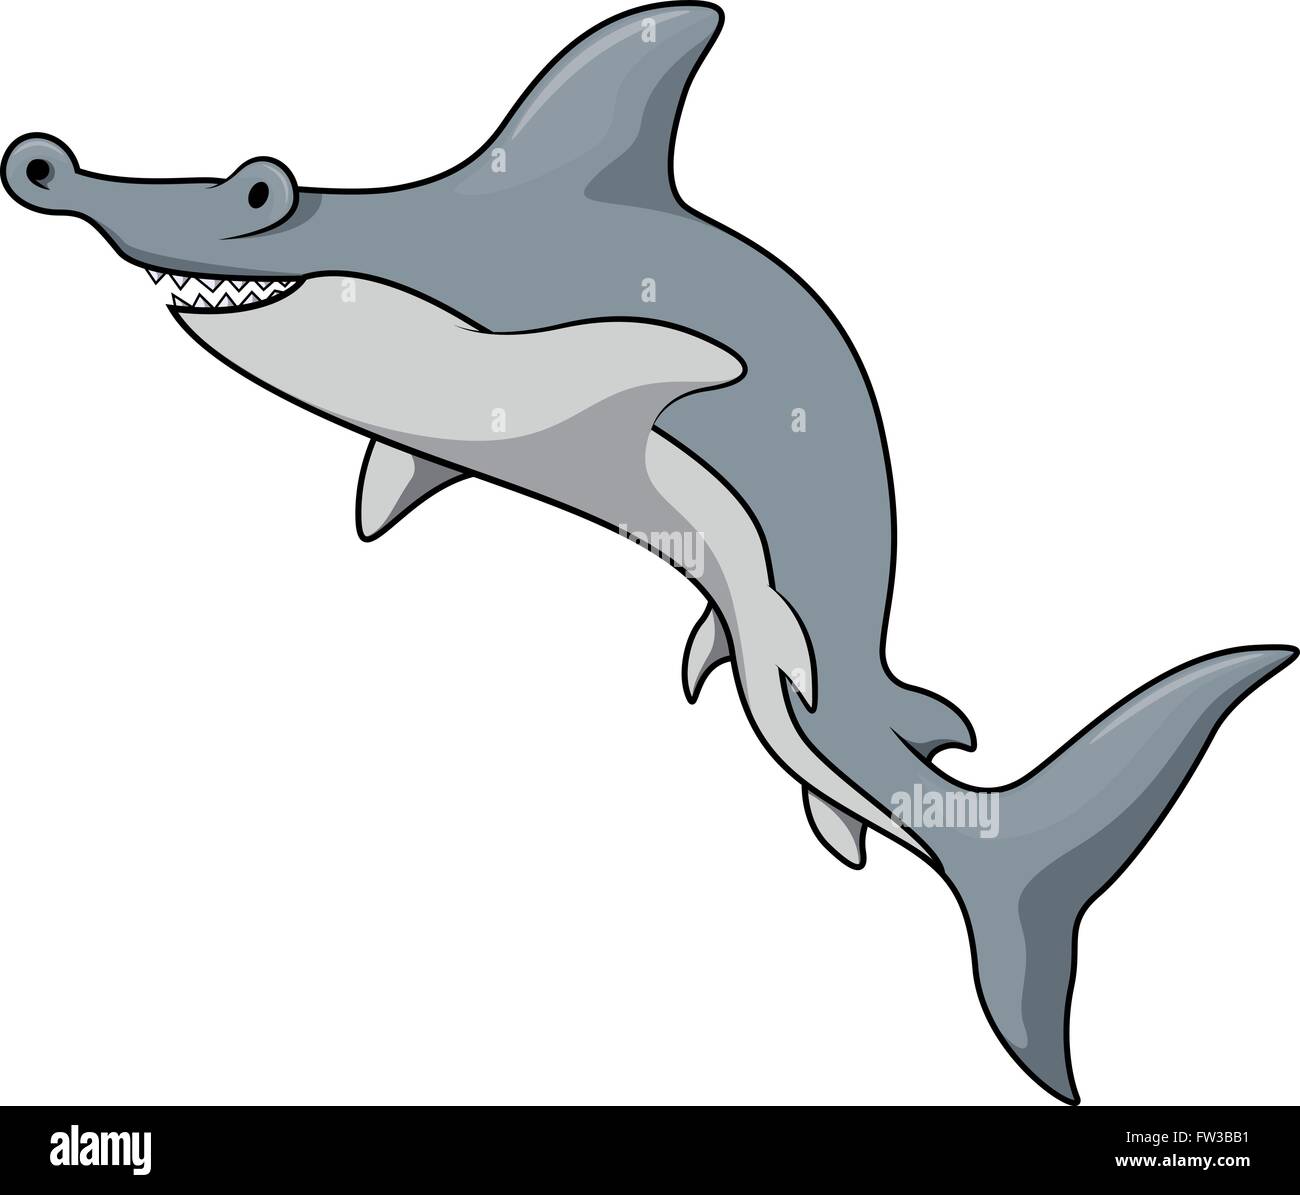 Hammer shark illustration Stock Vector